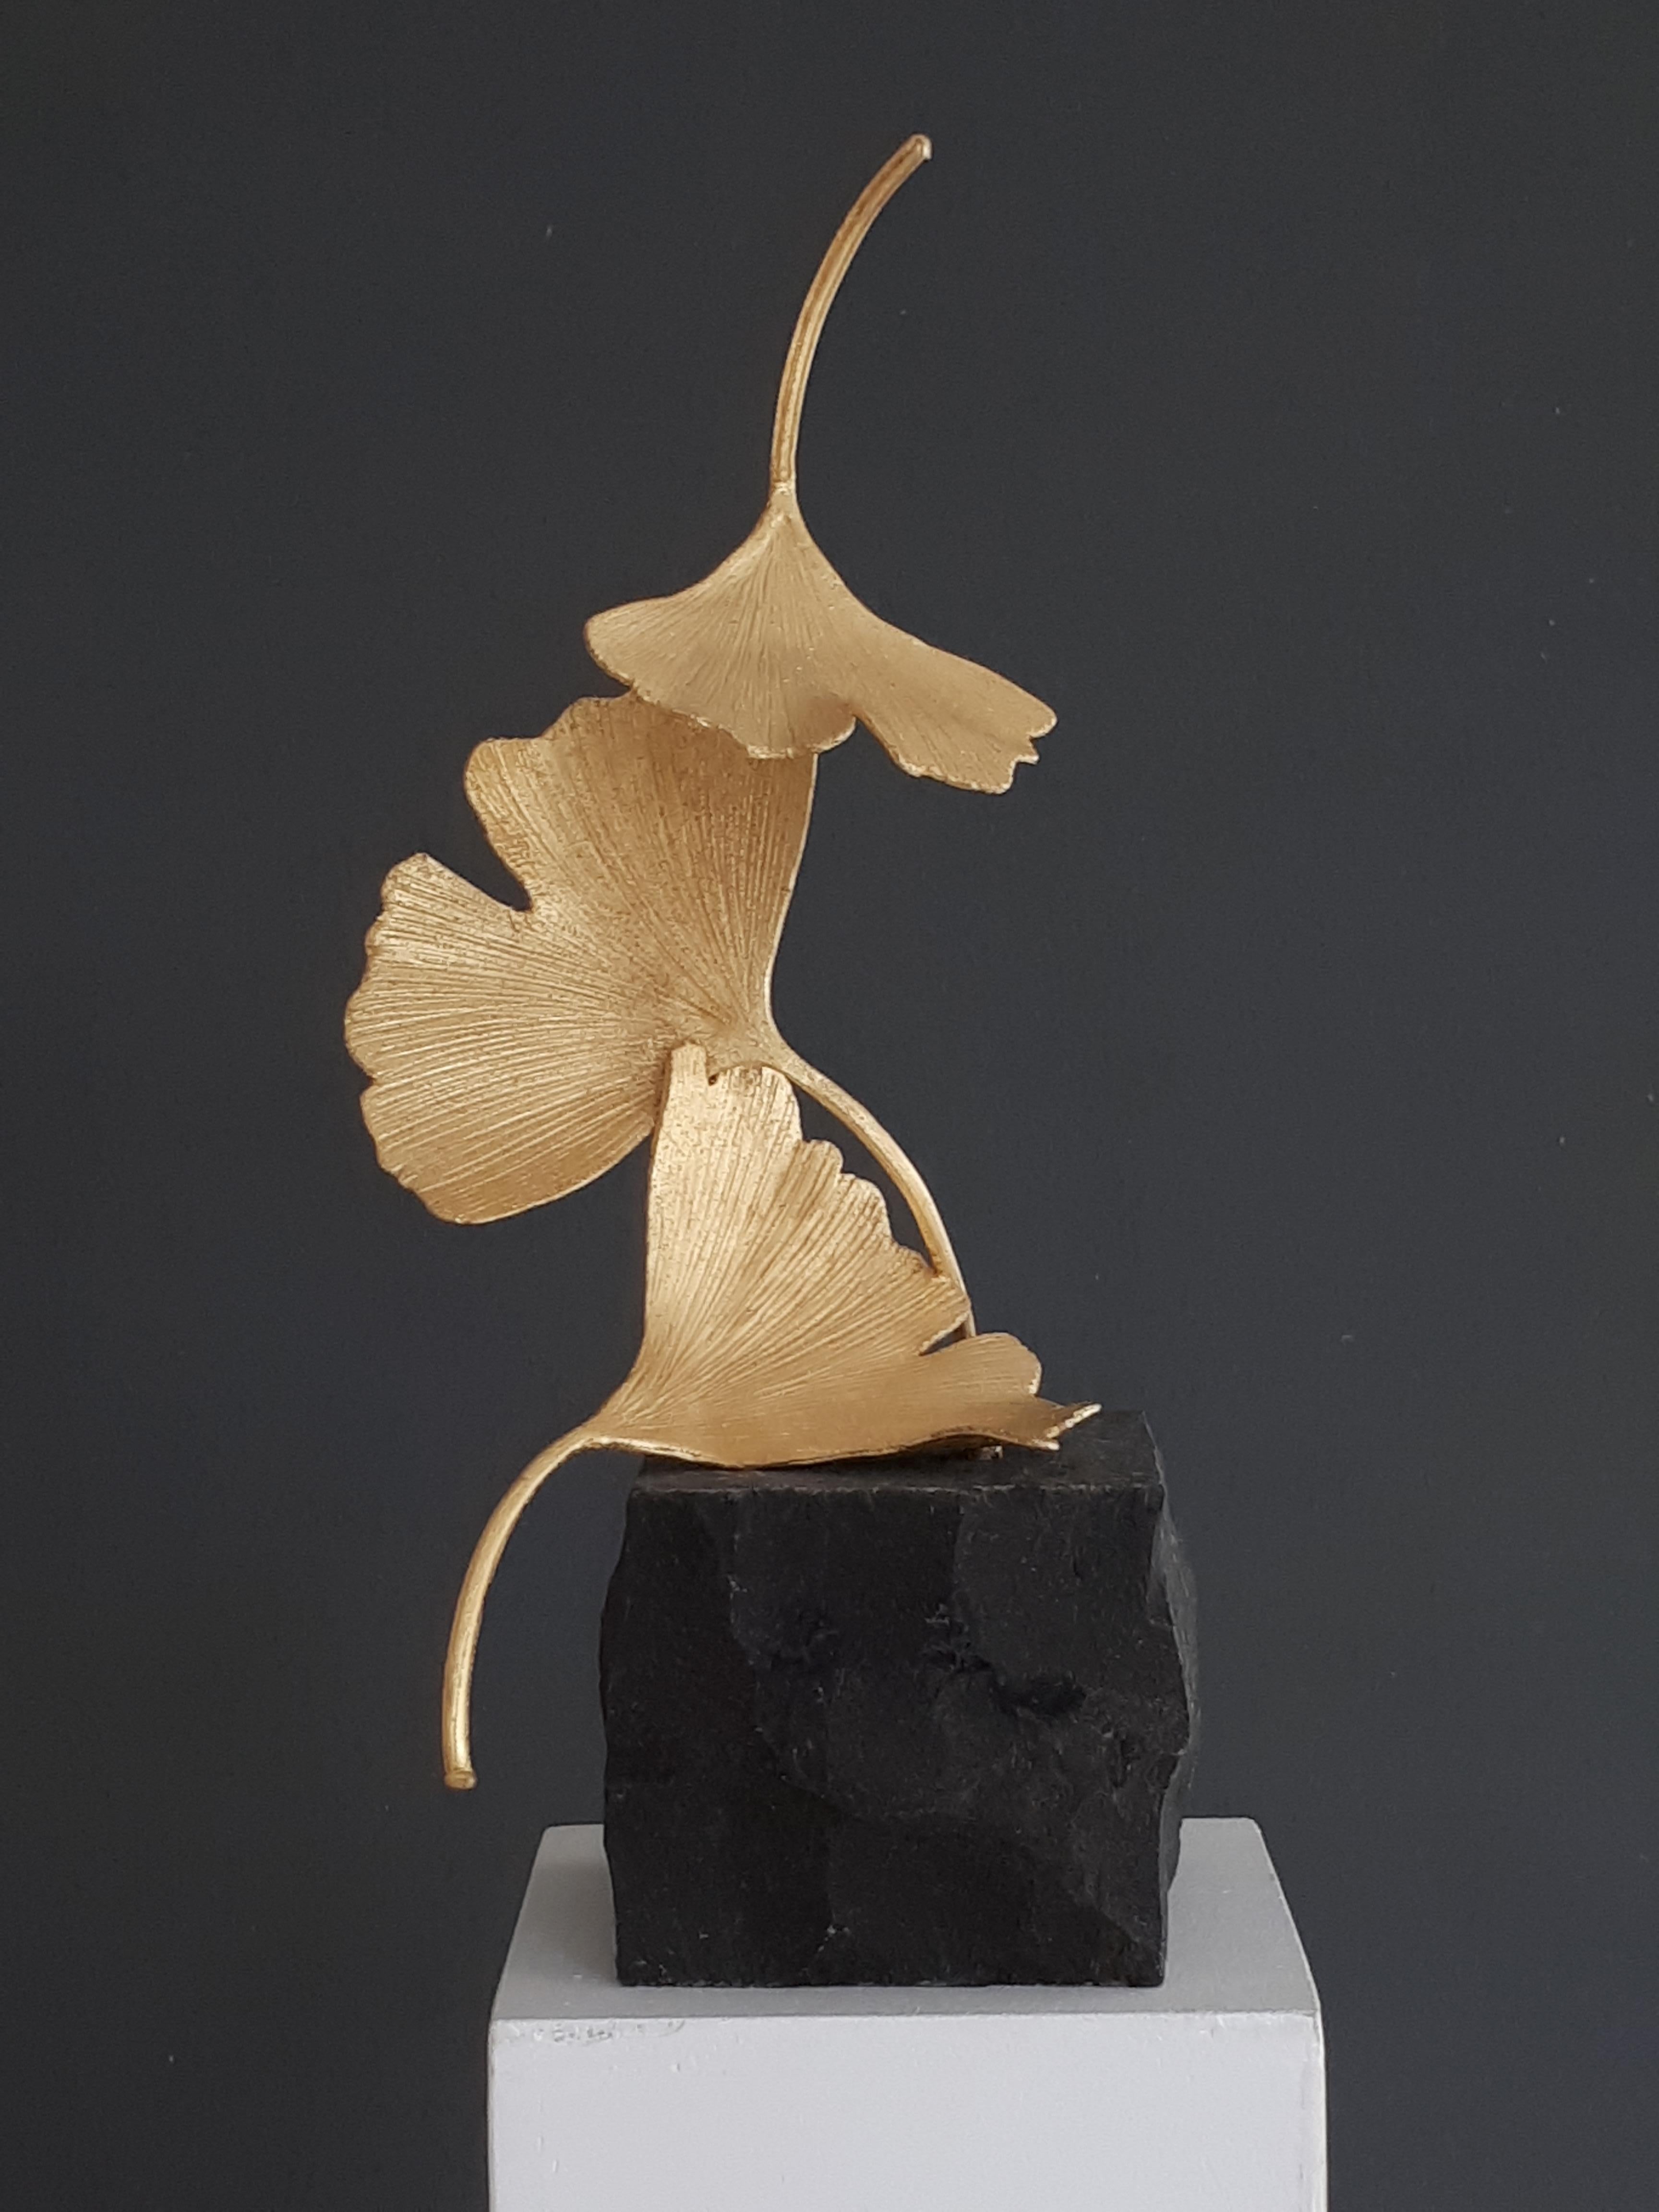 Golden Gingko by Kuno Vollet - Cast Brass gilded sculpture on black granite base 3